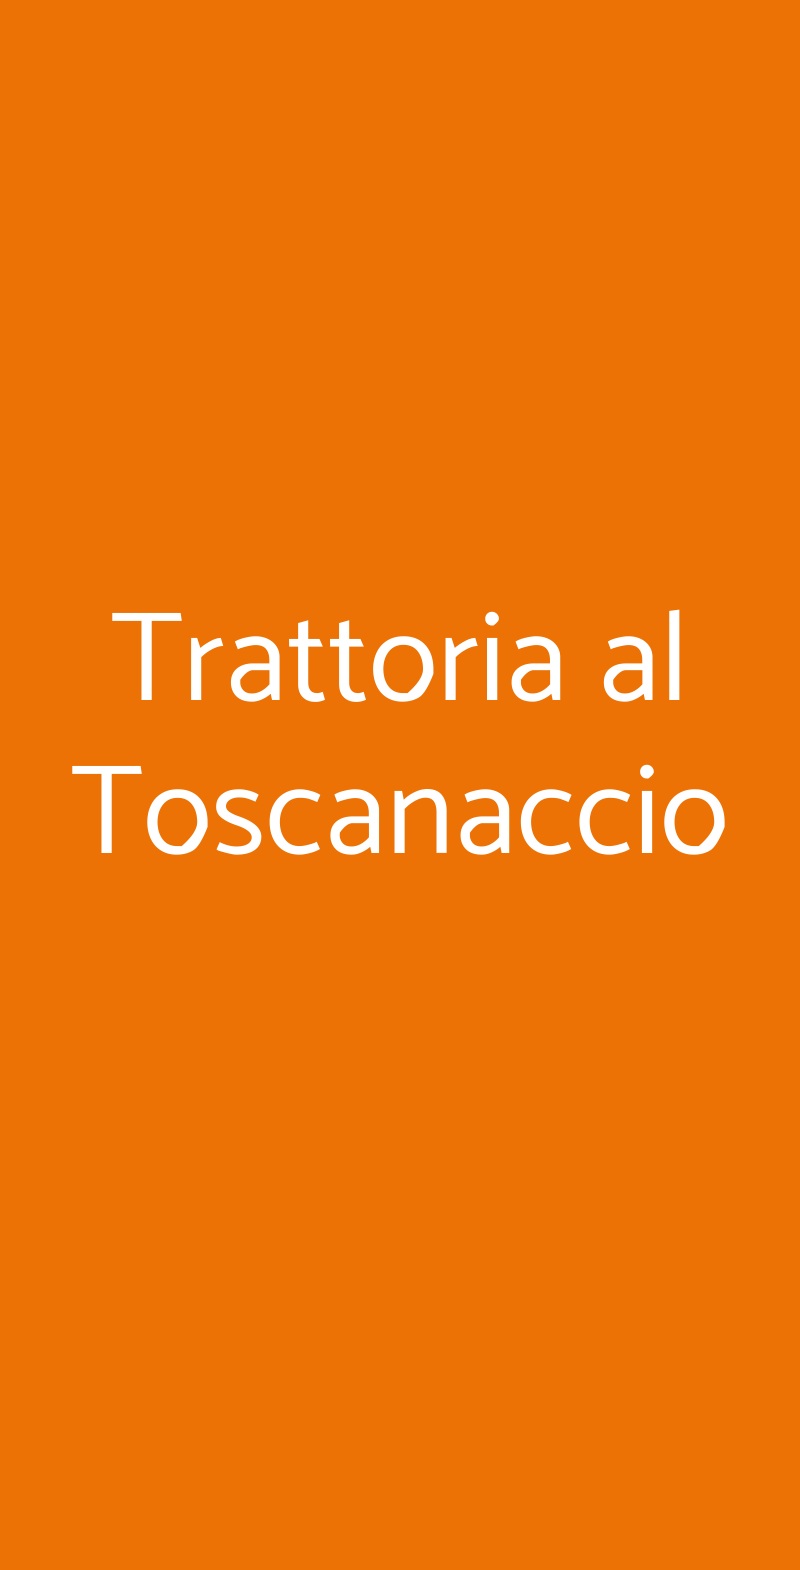 Trattoria al Toscanaccio Milano menù 1 pagina